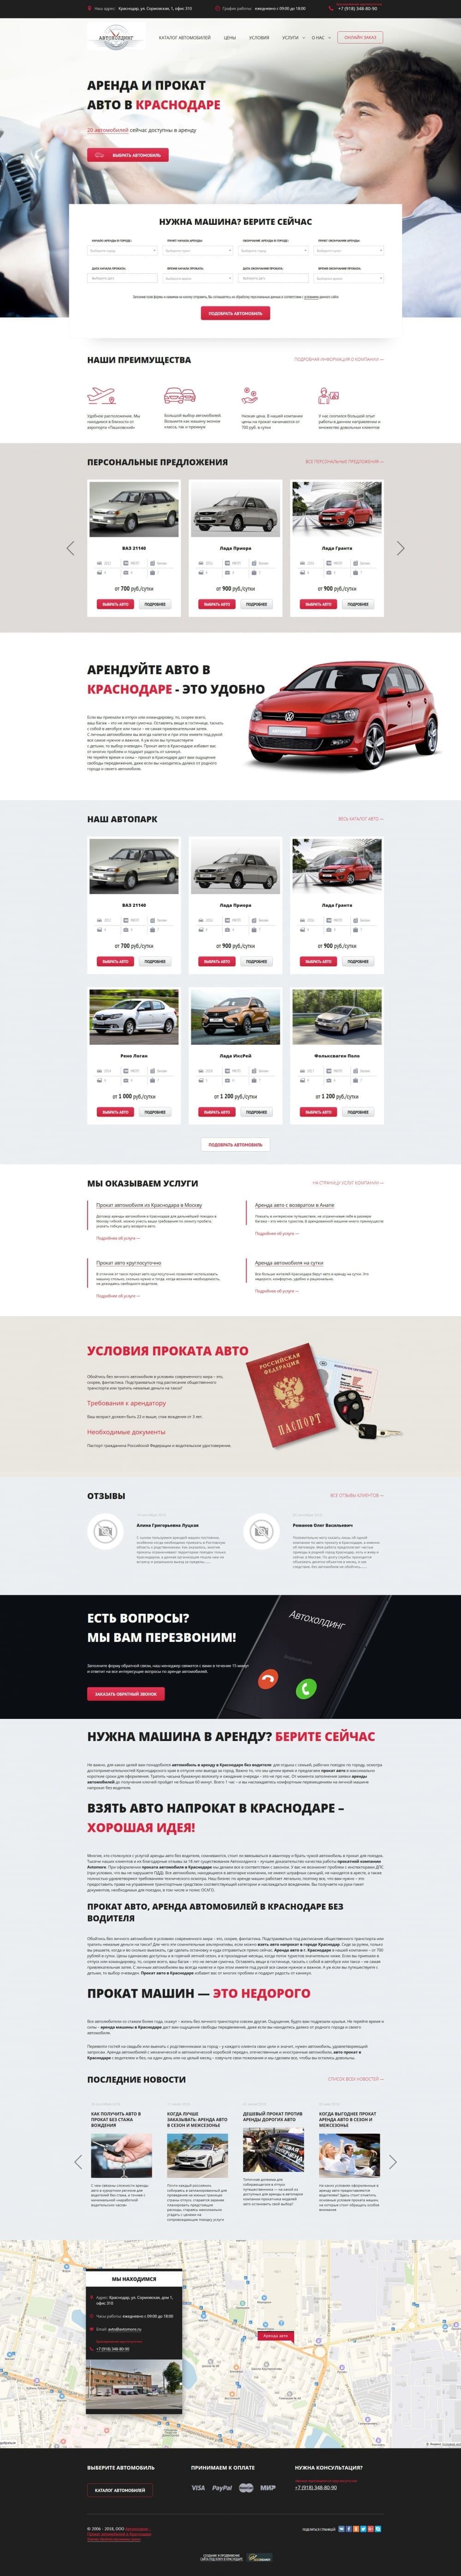 Создание сайта и продвижение по аренде автомобилей «avtomore.ru»